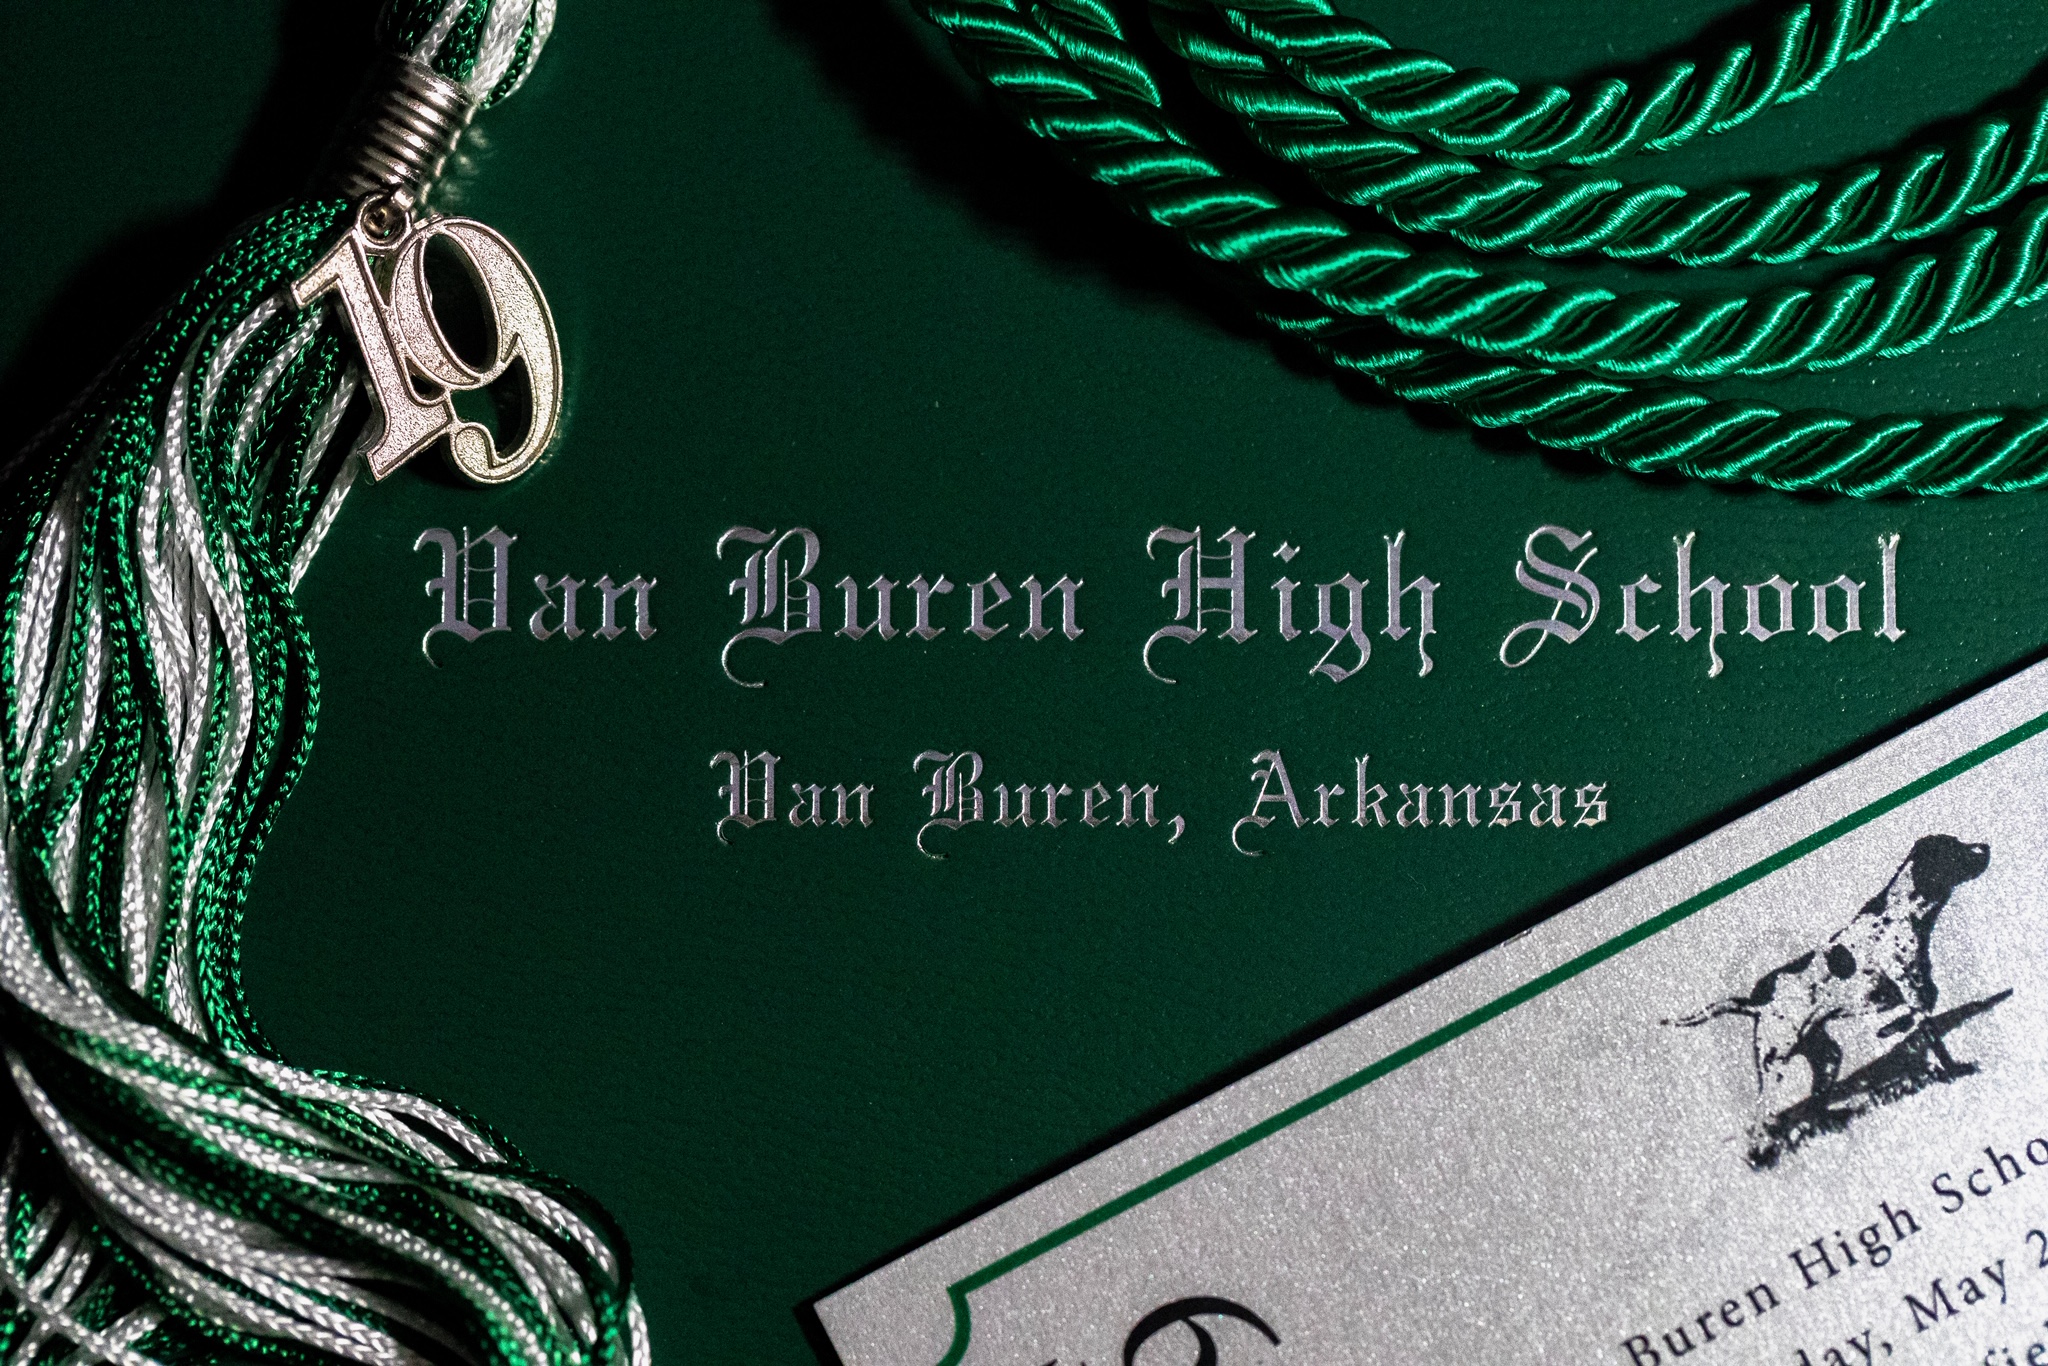 Van Buren High School Graduation tickets now available 